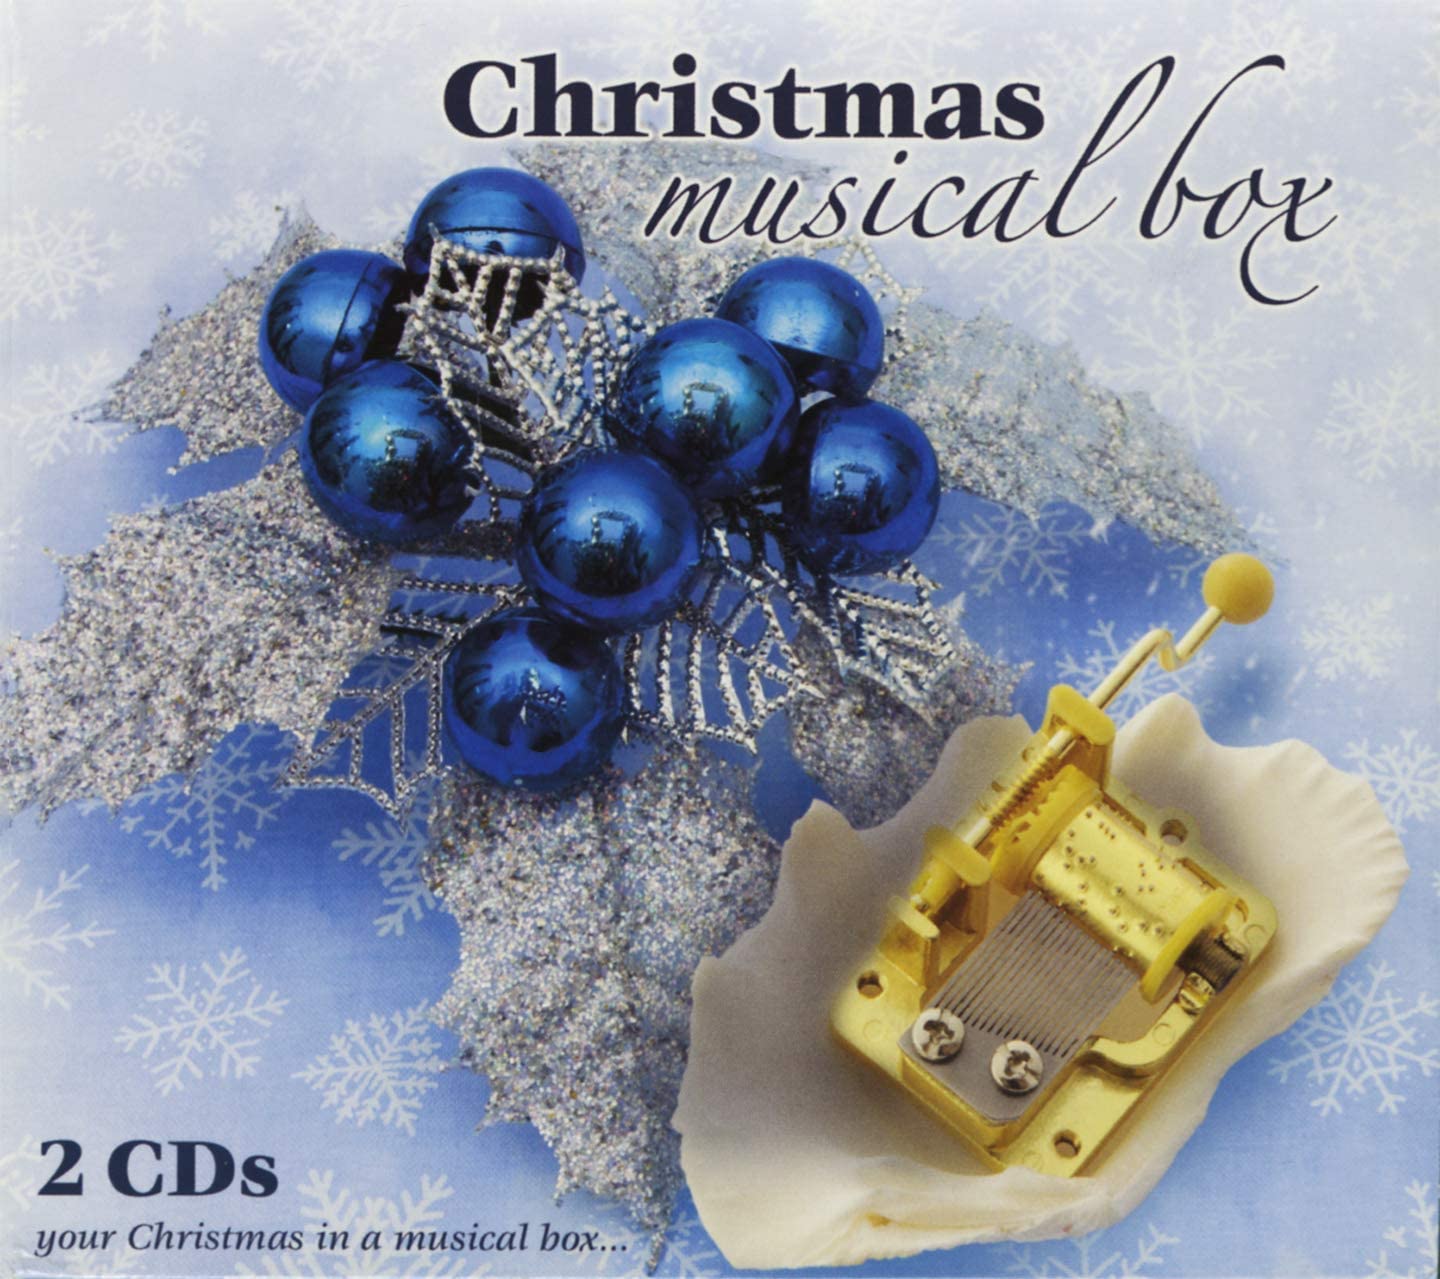 Christmas Musical Box [Audio CD] Christmas Musical Box